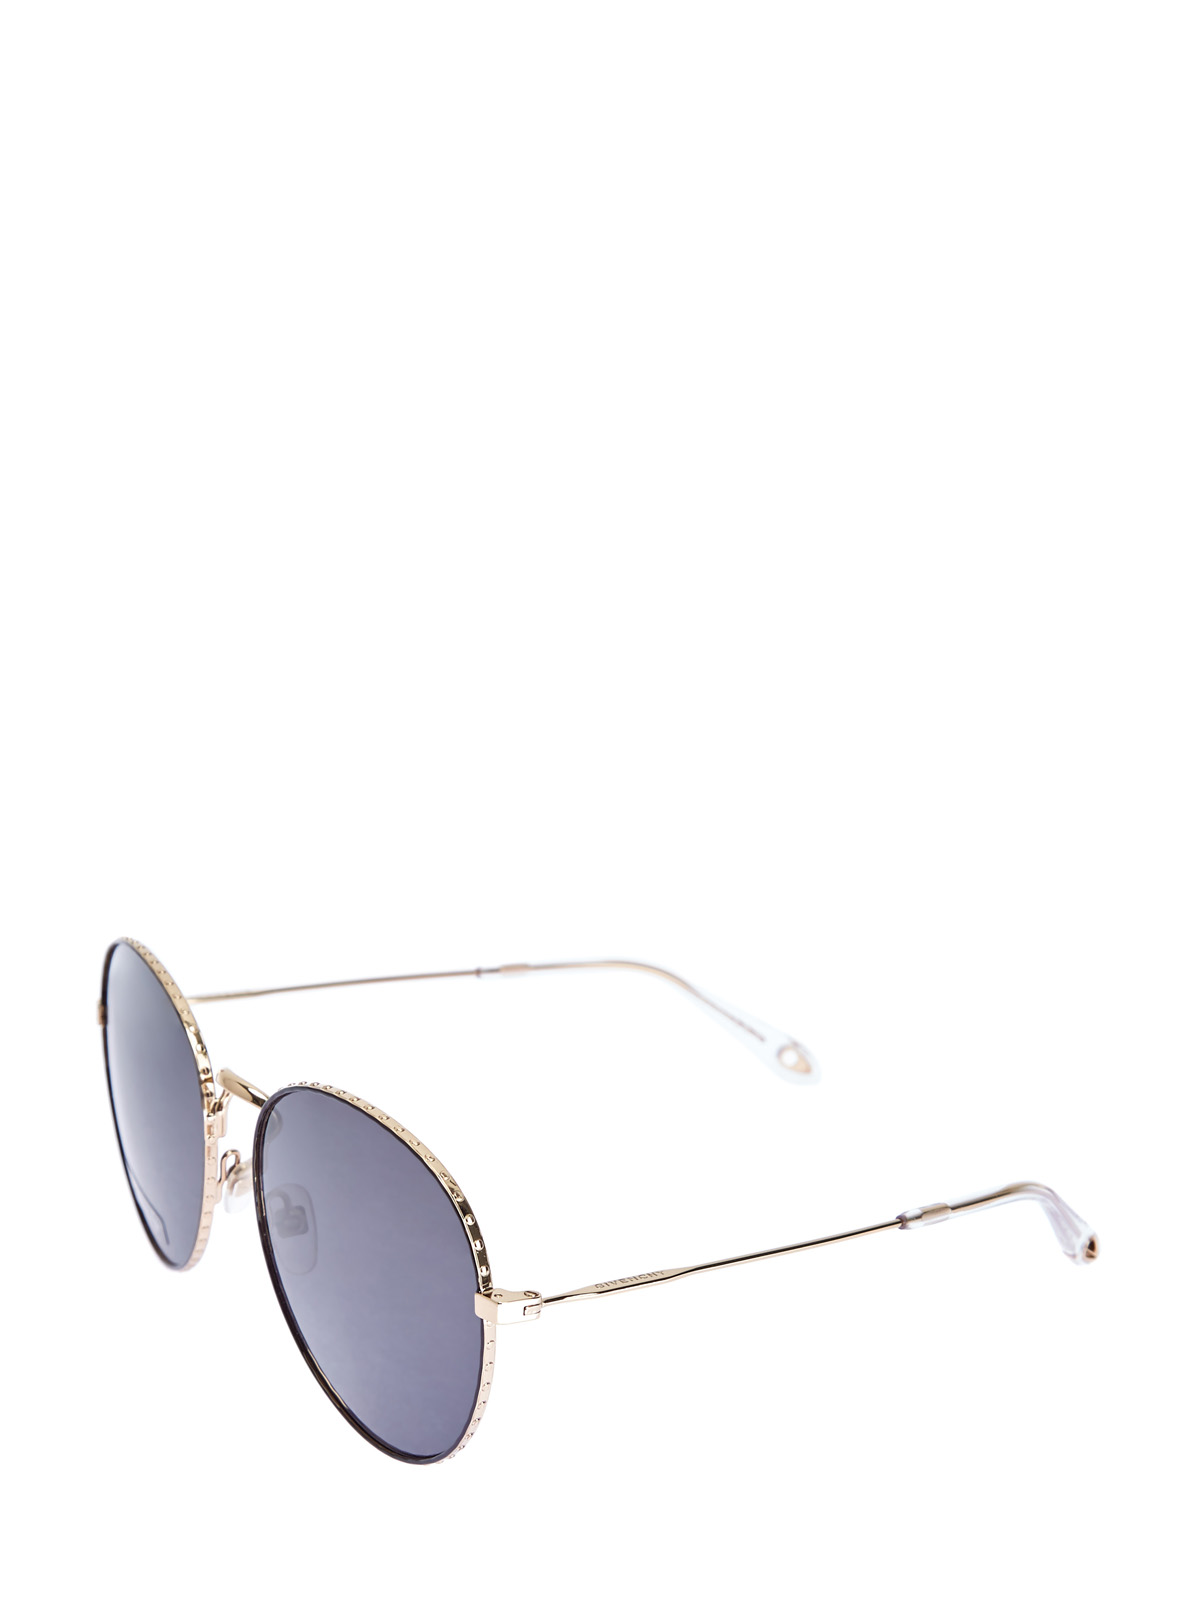 Очки-авиаторы с отделкой из металла золотистого цвета GIVENCHY (sunglasses), размер S;M;L - фото 2